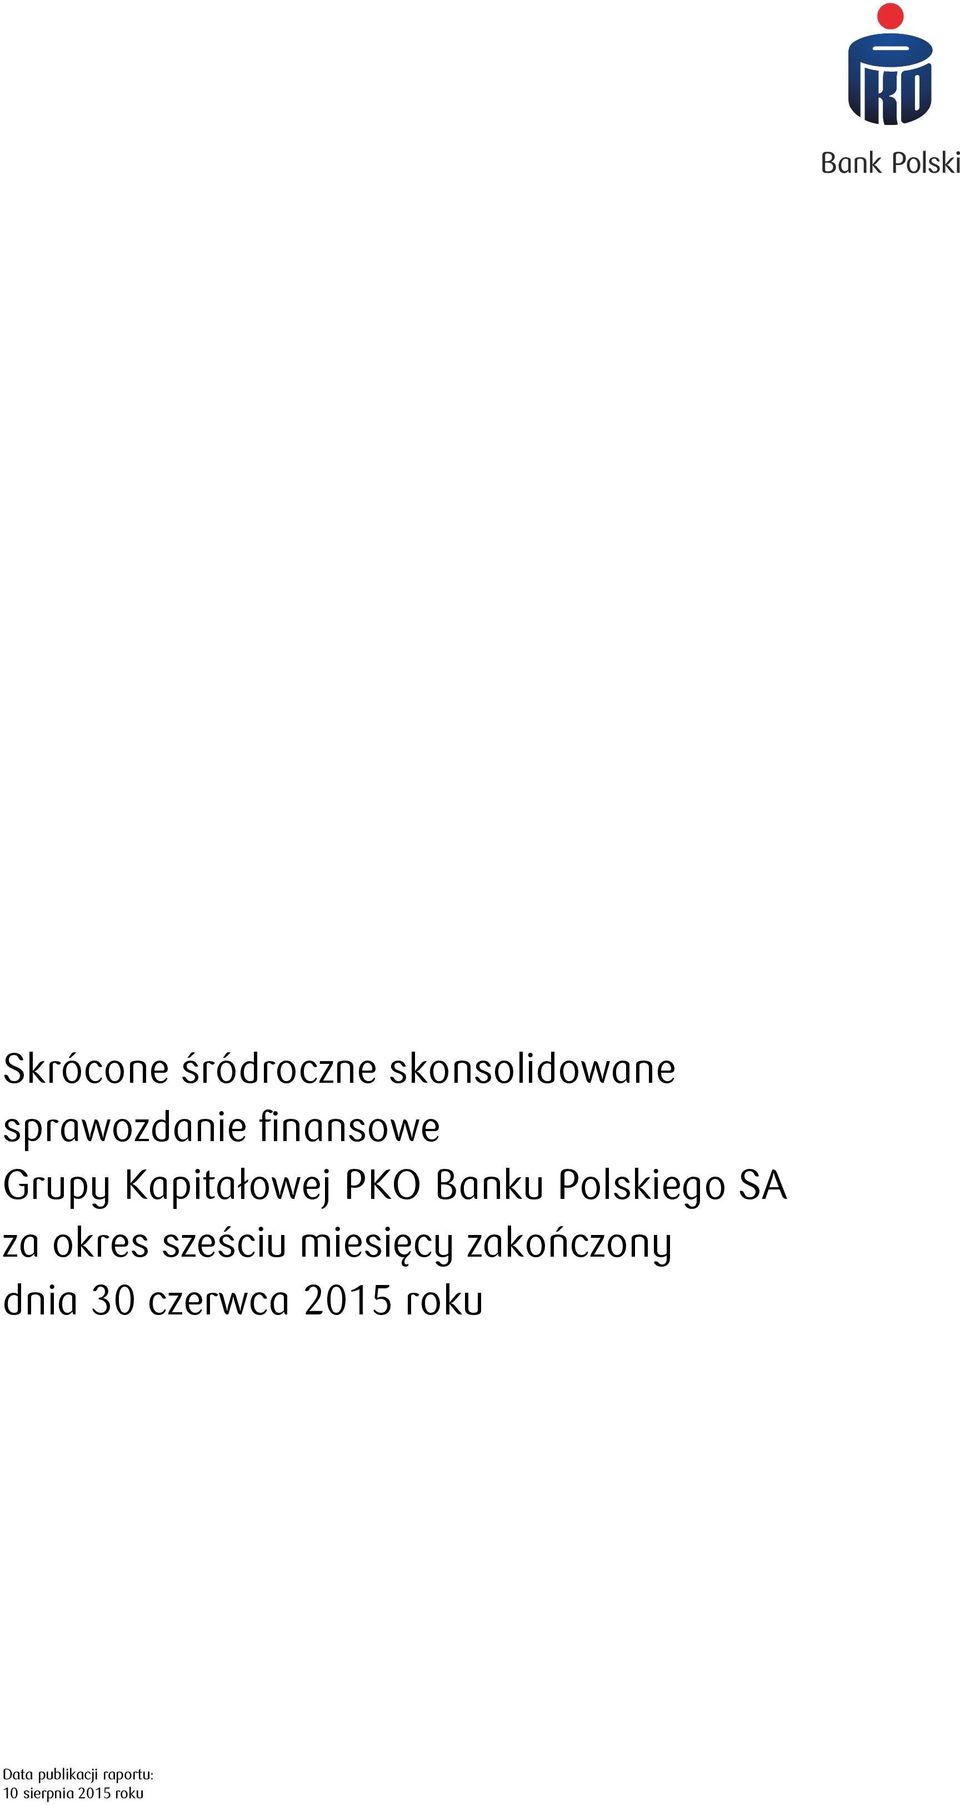 Banku Polskiego SA za sześciu miesięcy zakończony dnia 30